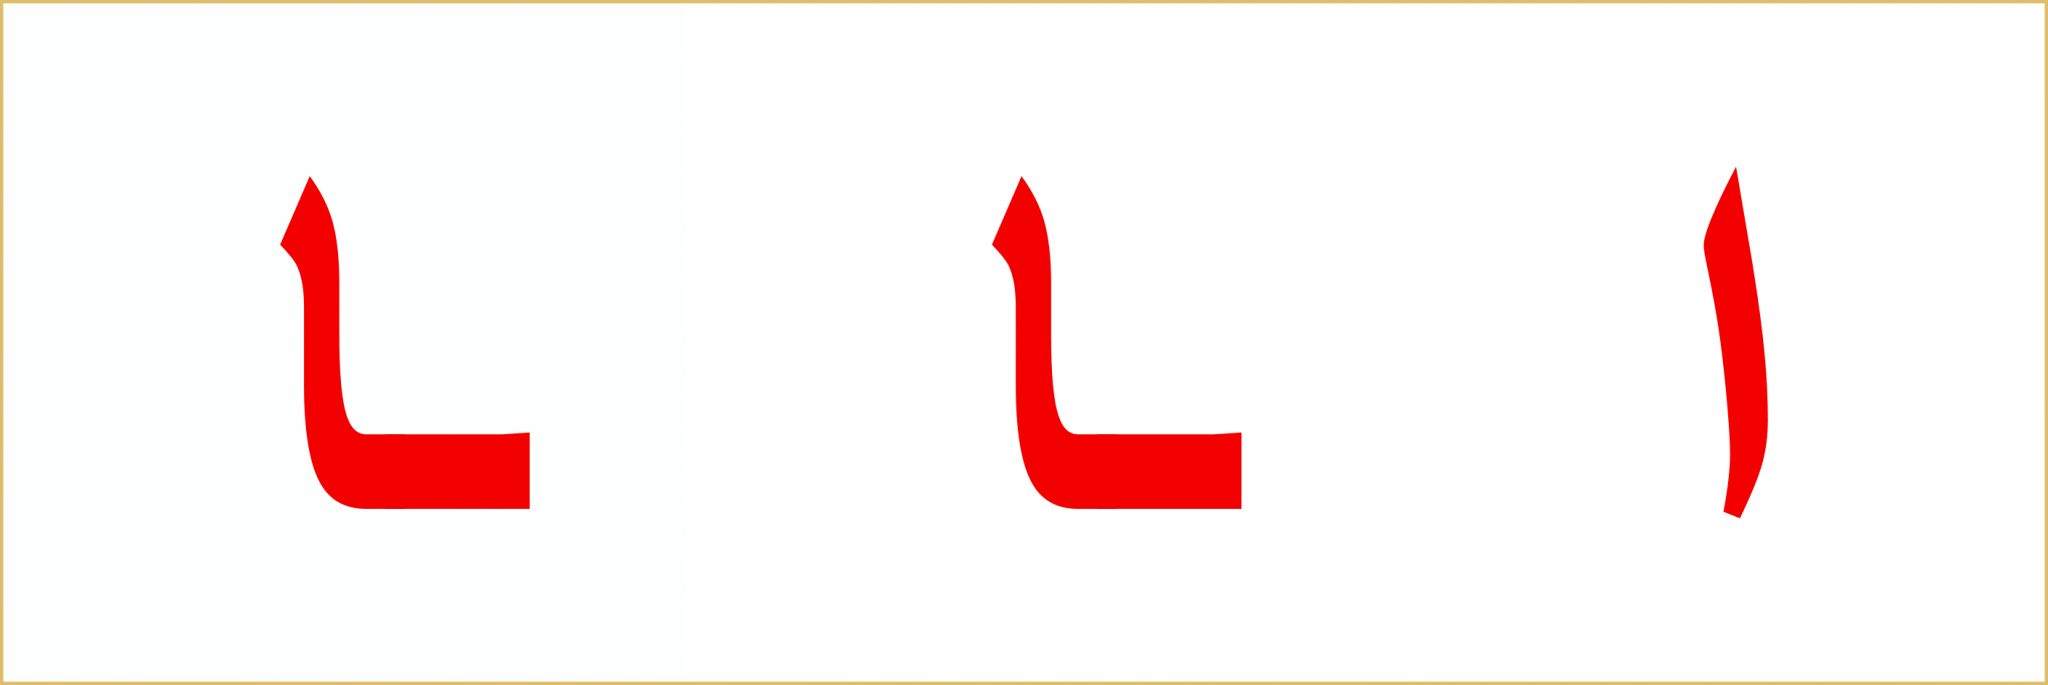 Das Alphabet Archive - QuranLesenLernen.de - den Quran & Arabisch